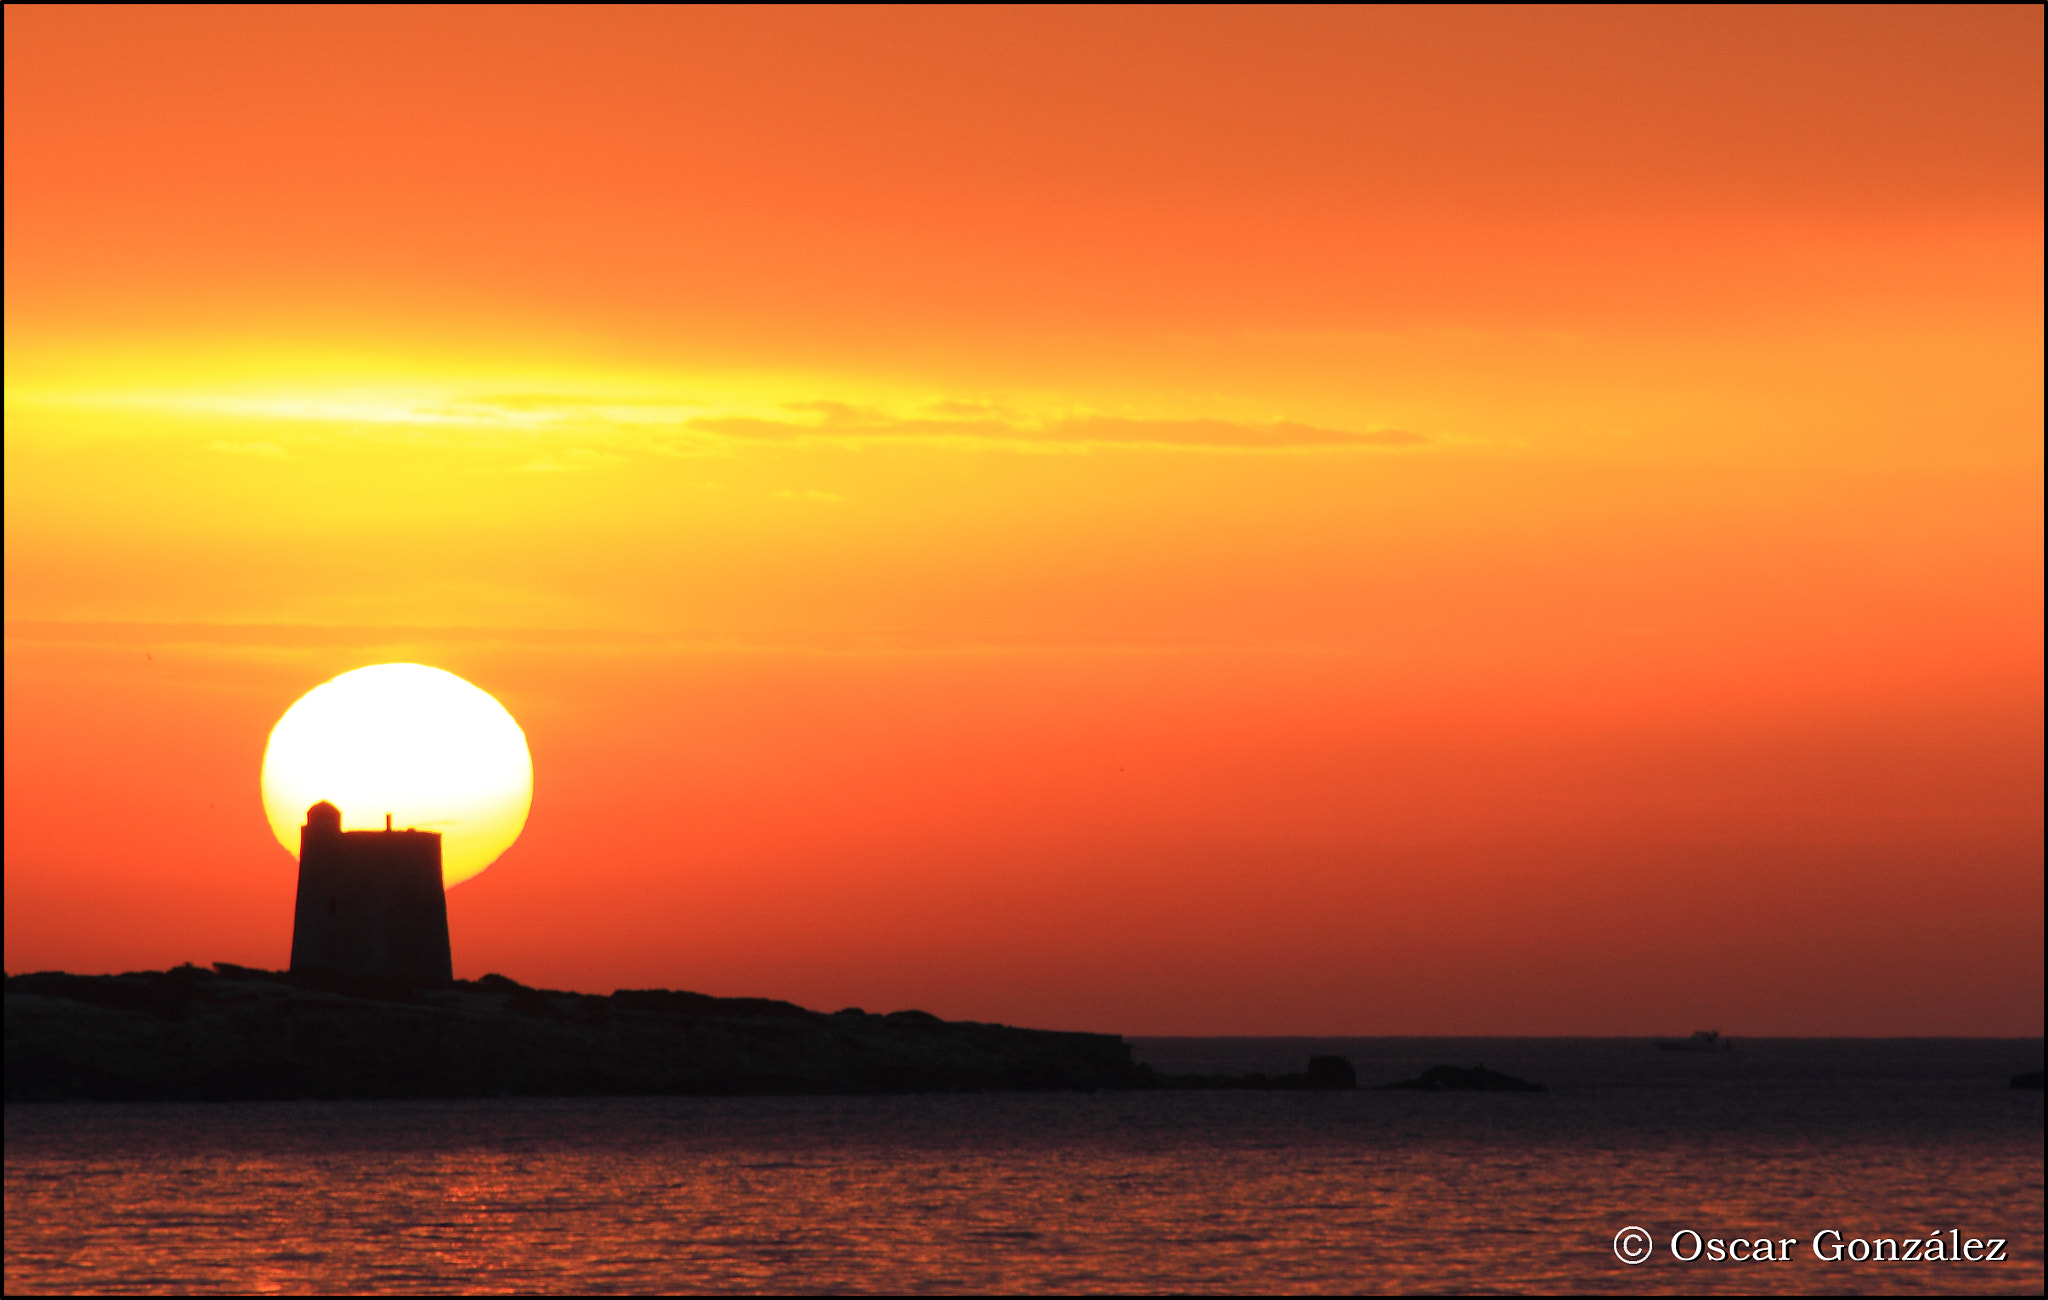 Canon EOS 7D sample photo. El sol y la torre. photography